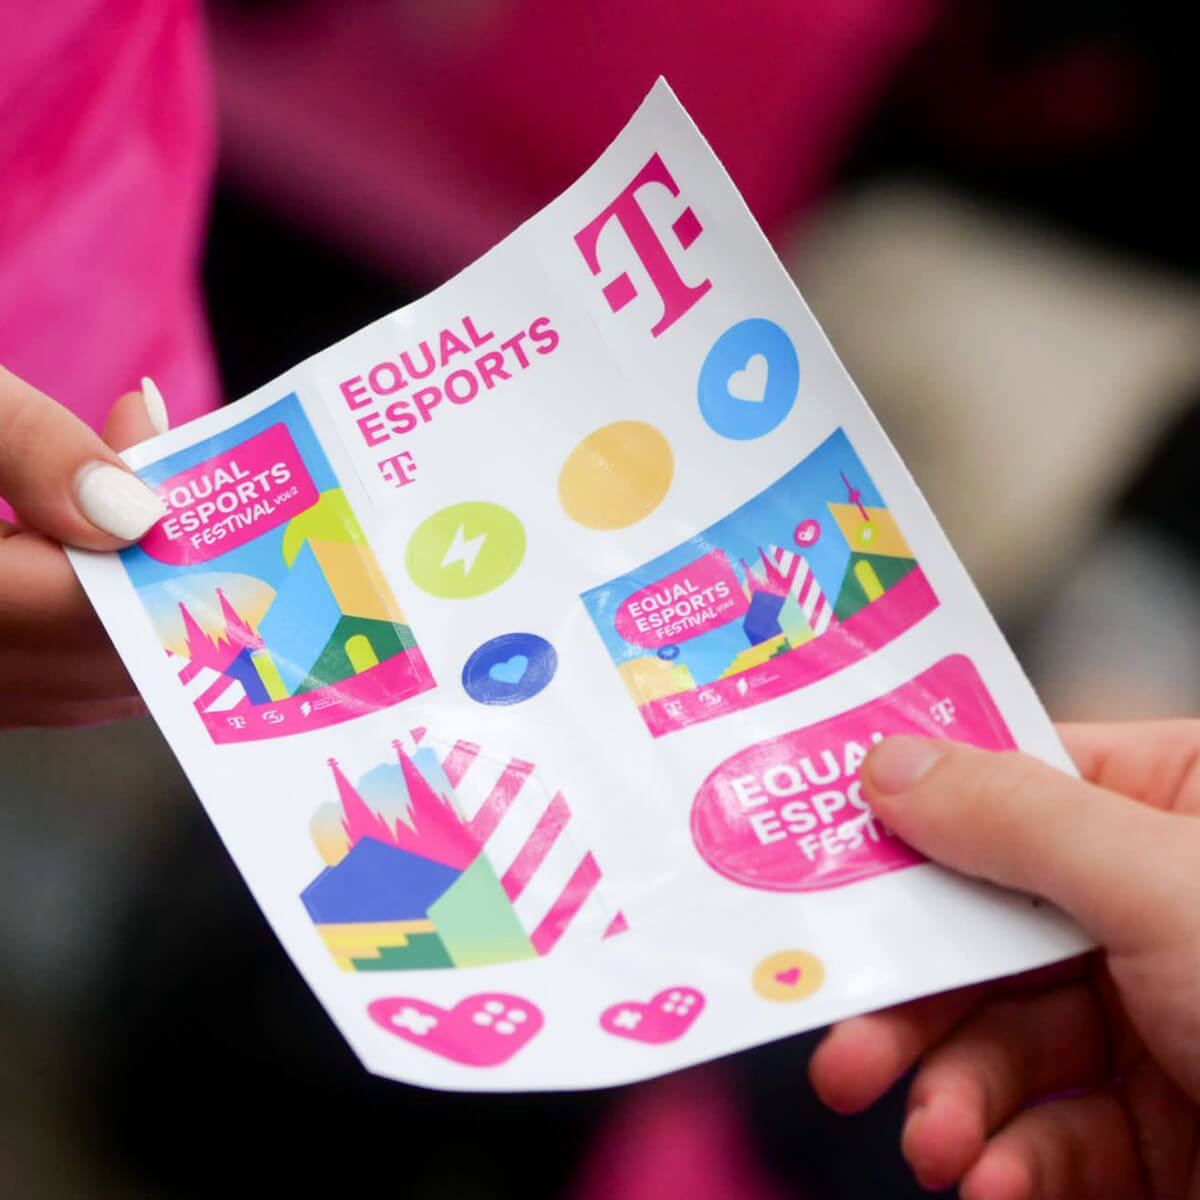 Auf diesem Bild ist ein DinA5 Stickerbogen zu sehen, den tikitay für das EQUAL ESPORTS FESTIVAL der Deutschen Telekom produziert hat.